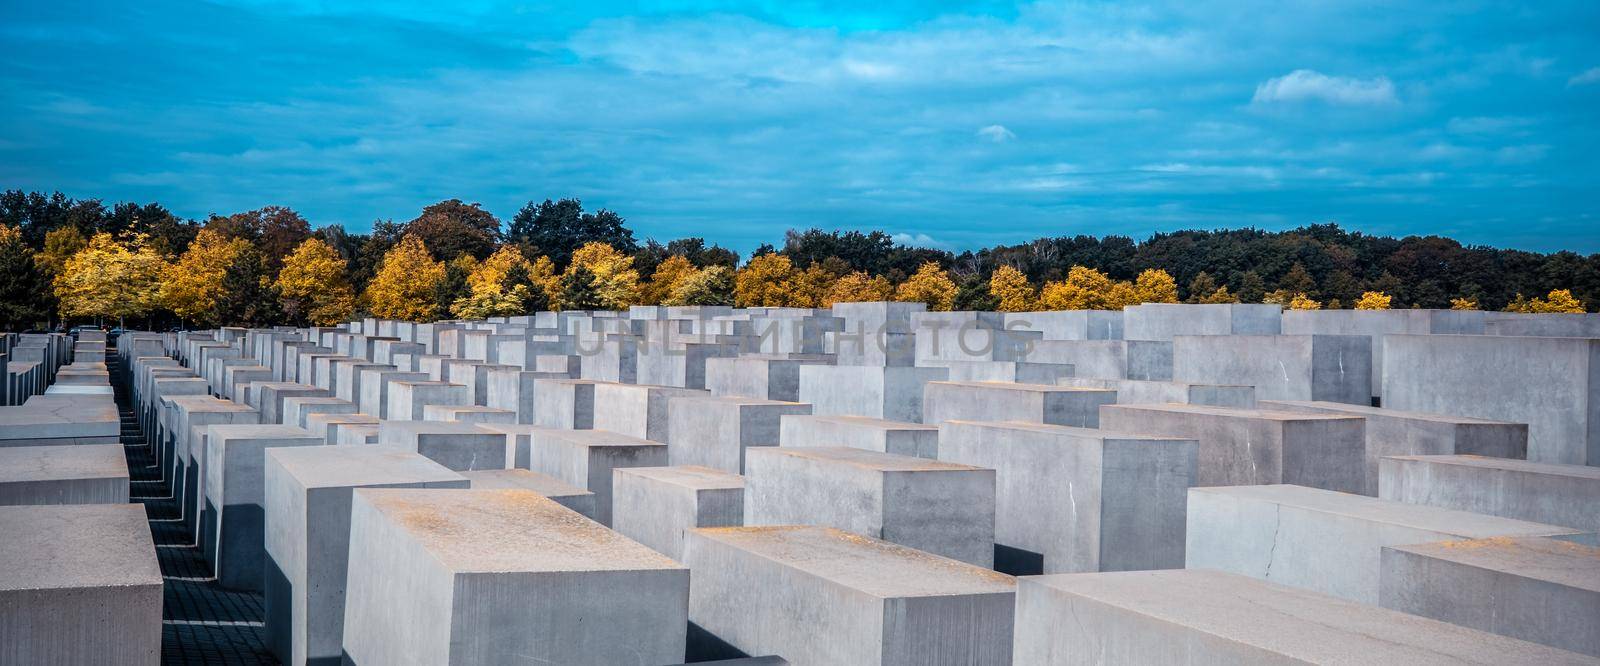 Memorial to the Murdered Jews of Europe by GekaSkr